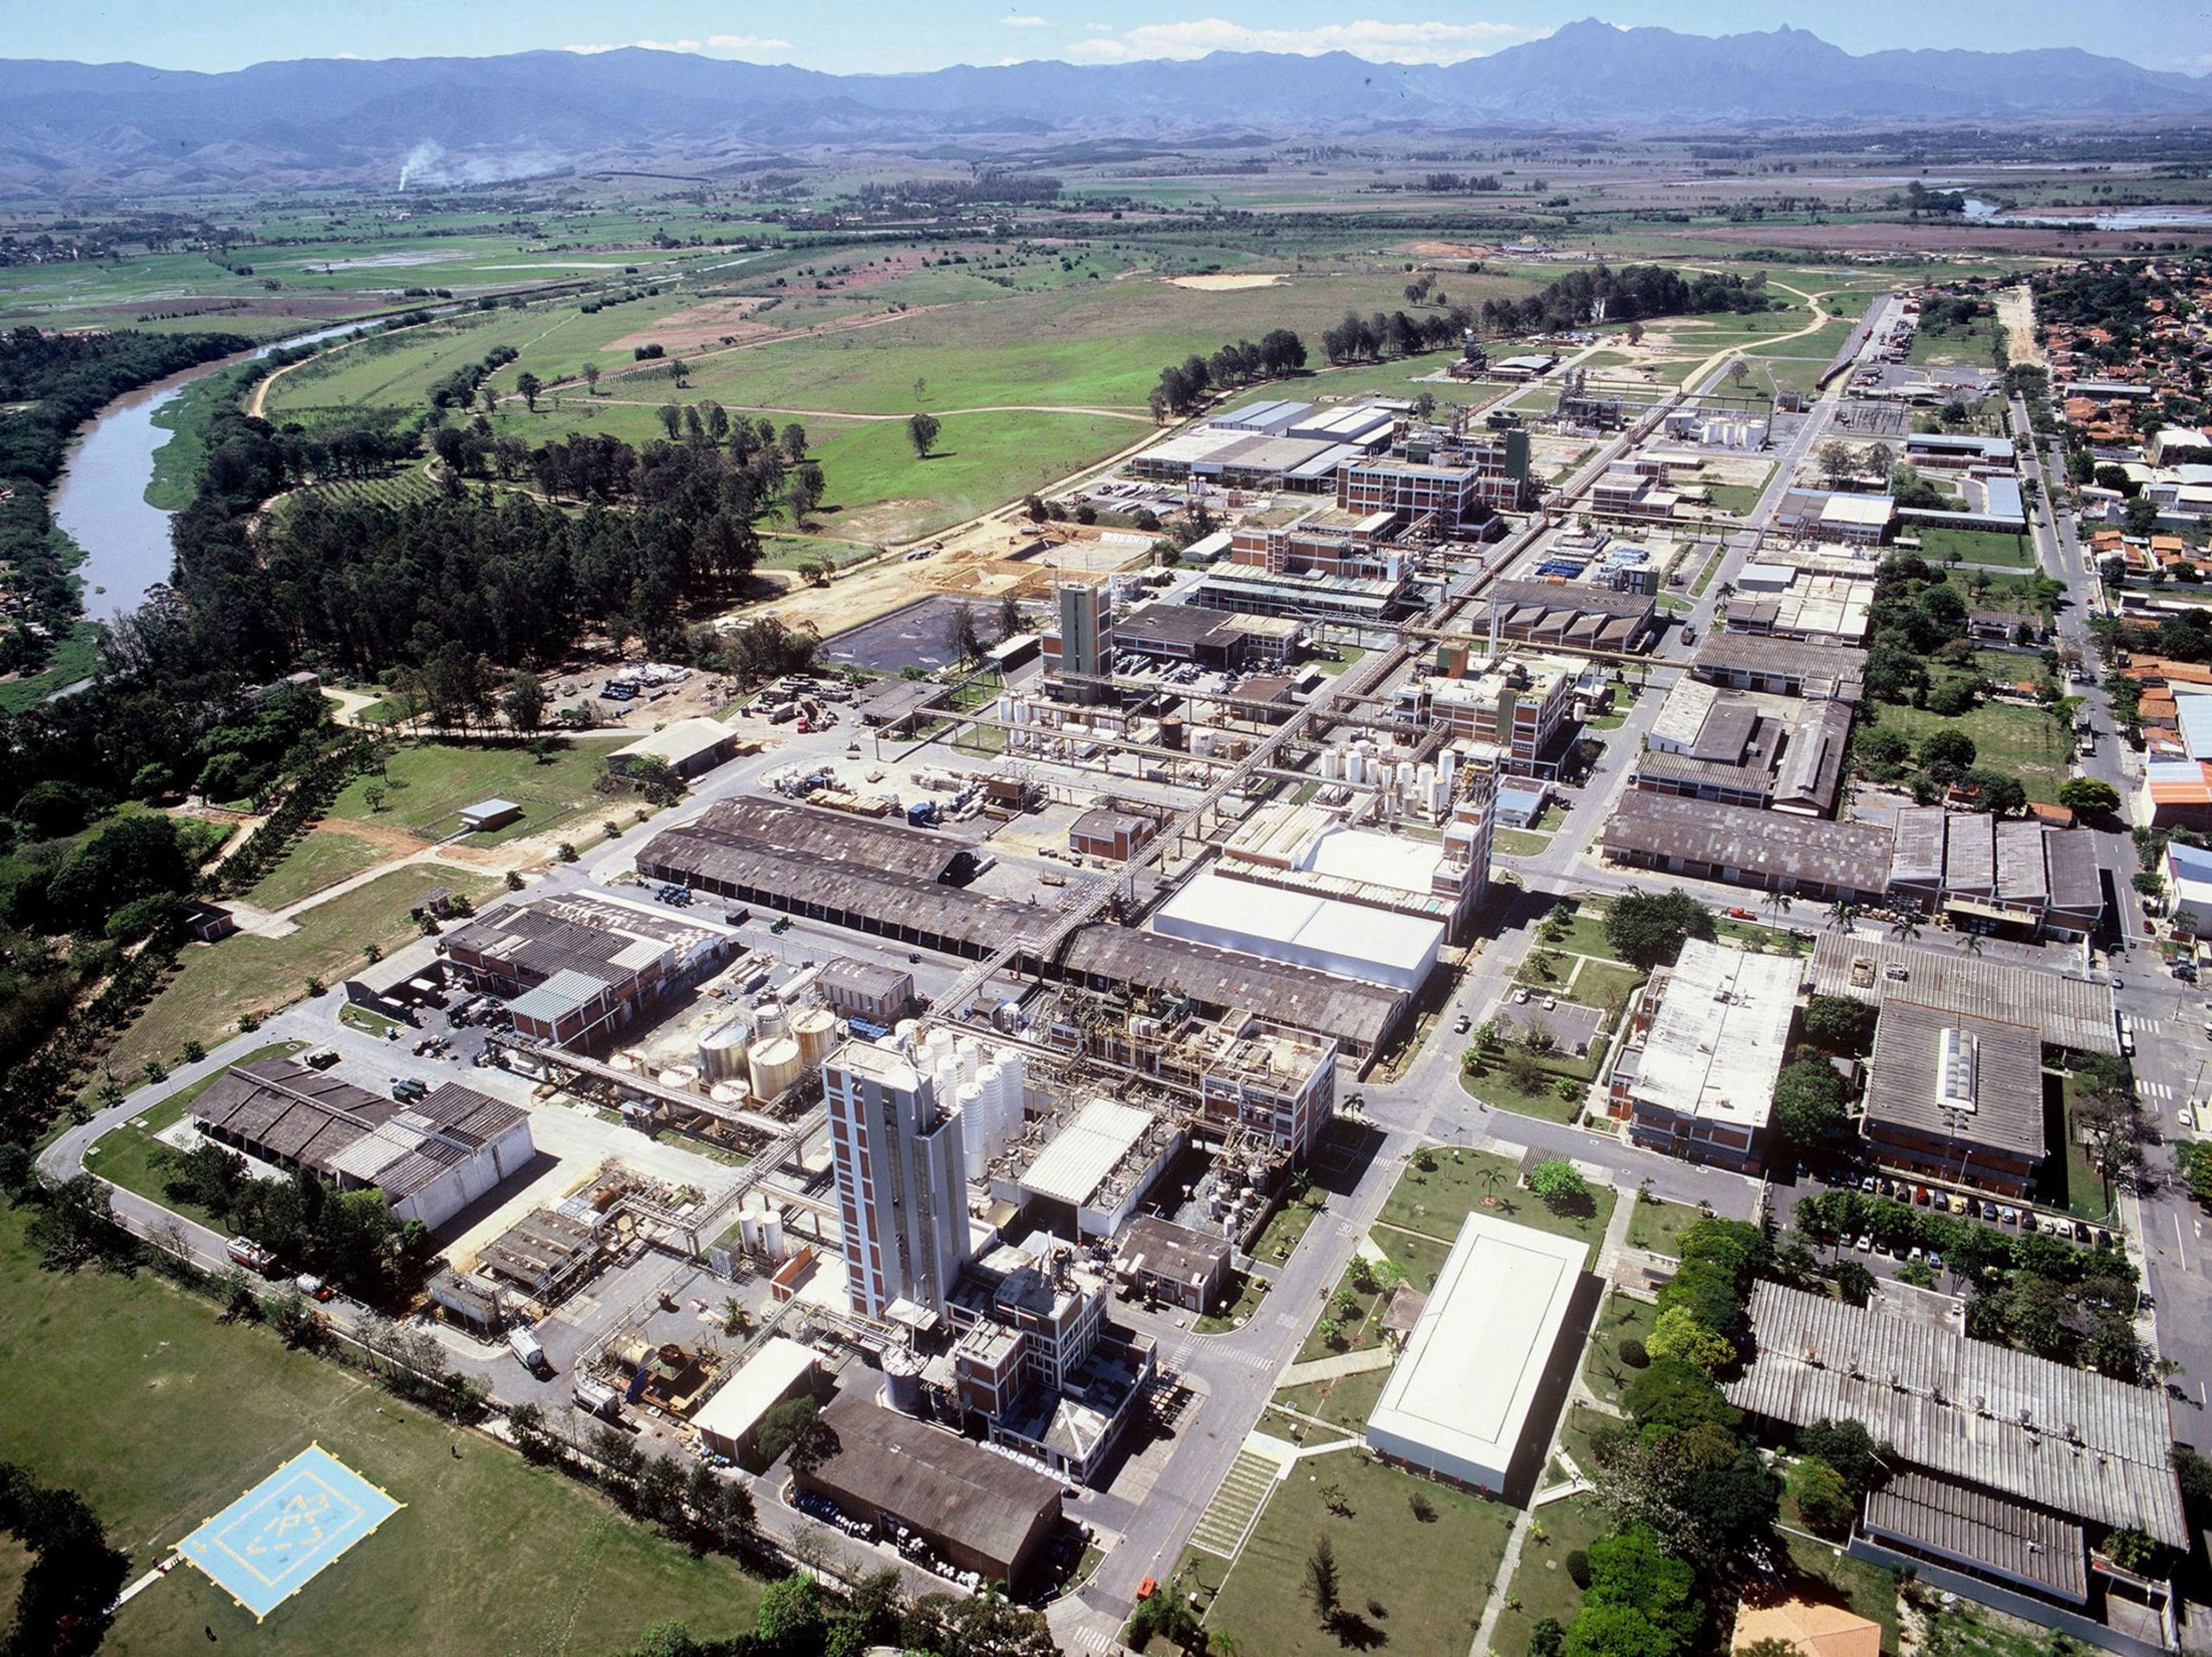 Gás na agenda regulatória. Na imagem: Vista aérea de complexo industrial; Principal unidade de produção da BASF na América do Sul, com 12 fábricas, em Guaratinguetá (SP), no centro industrial entre SP, MG e RJ (Foto: Divulgação)